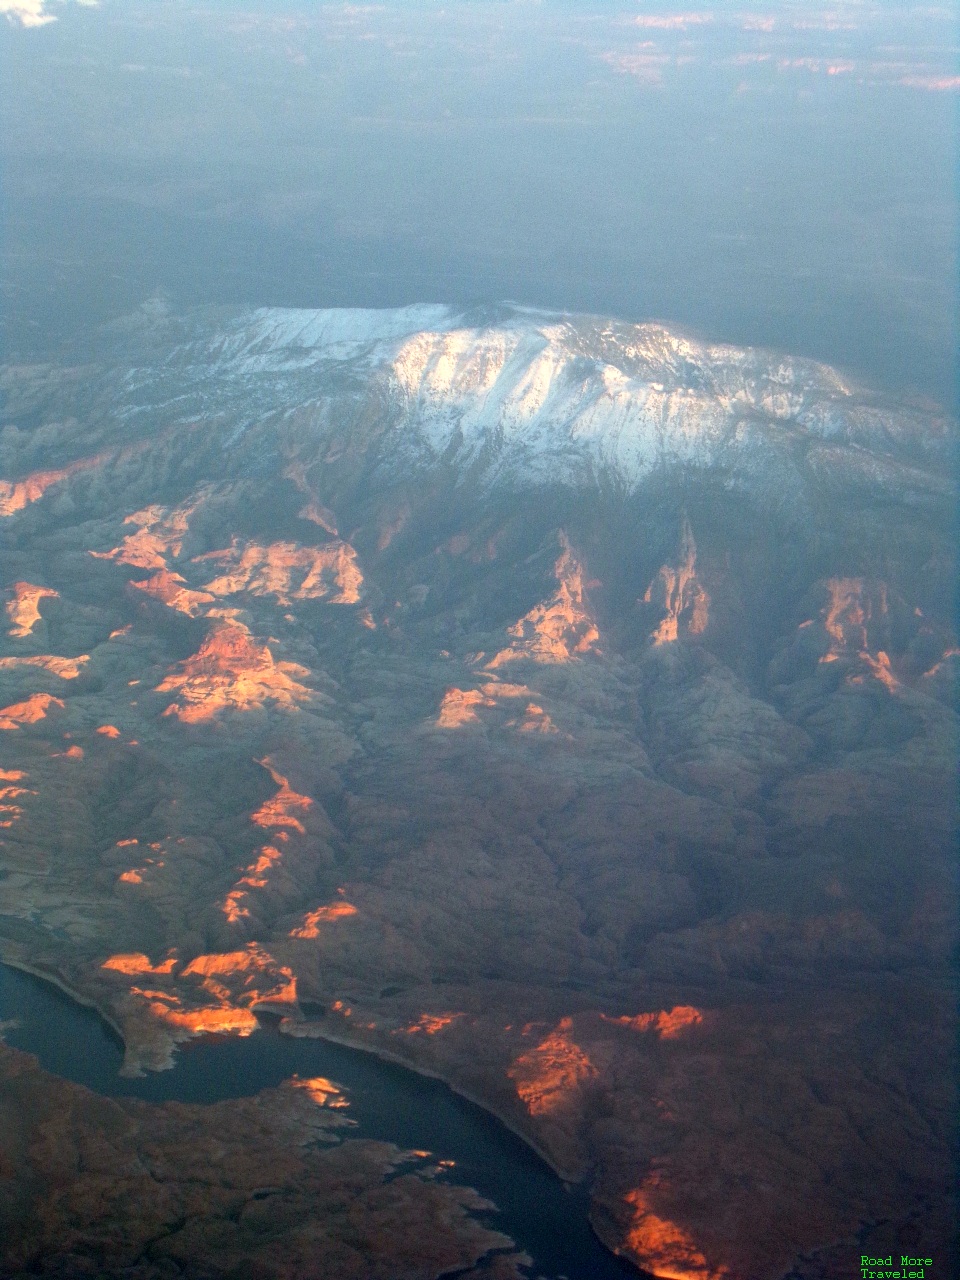 Desert amd mountains of Utah